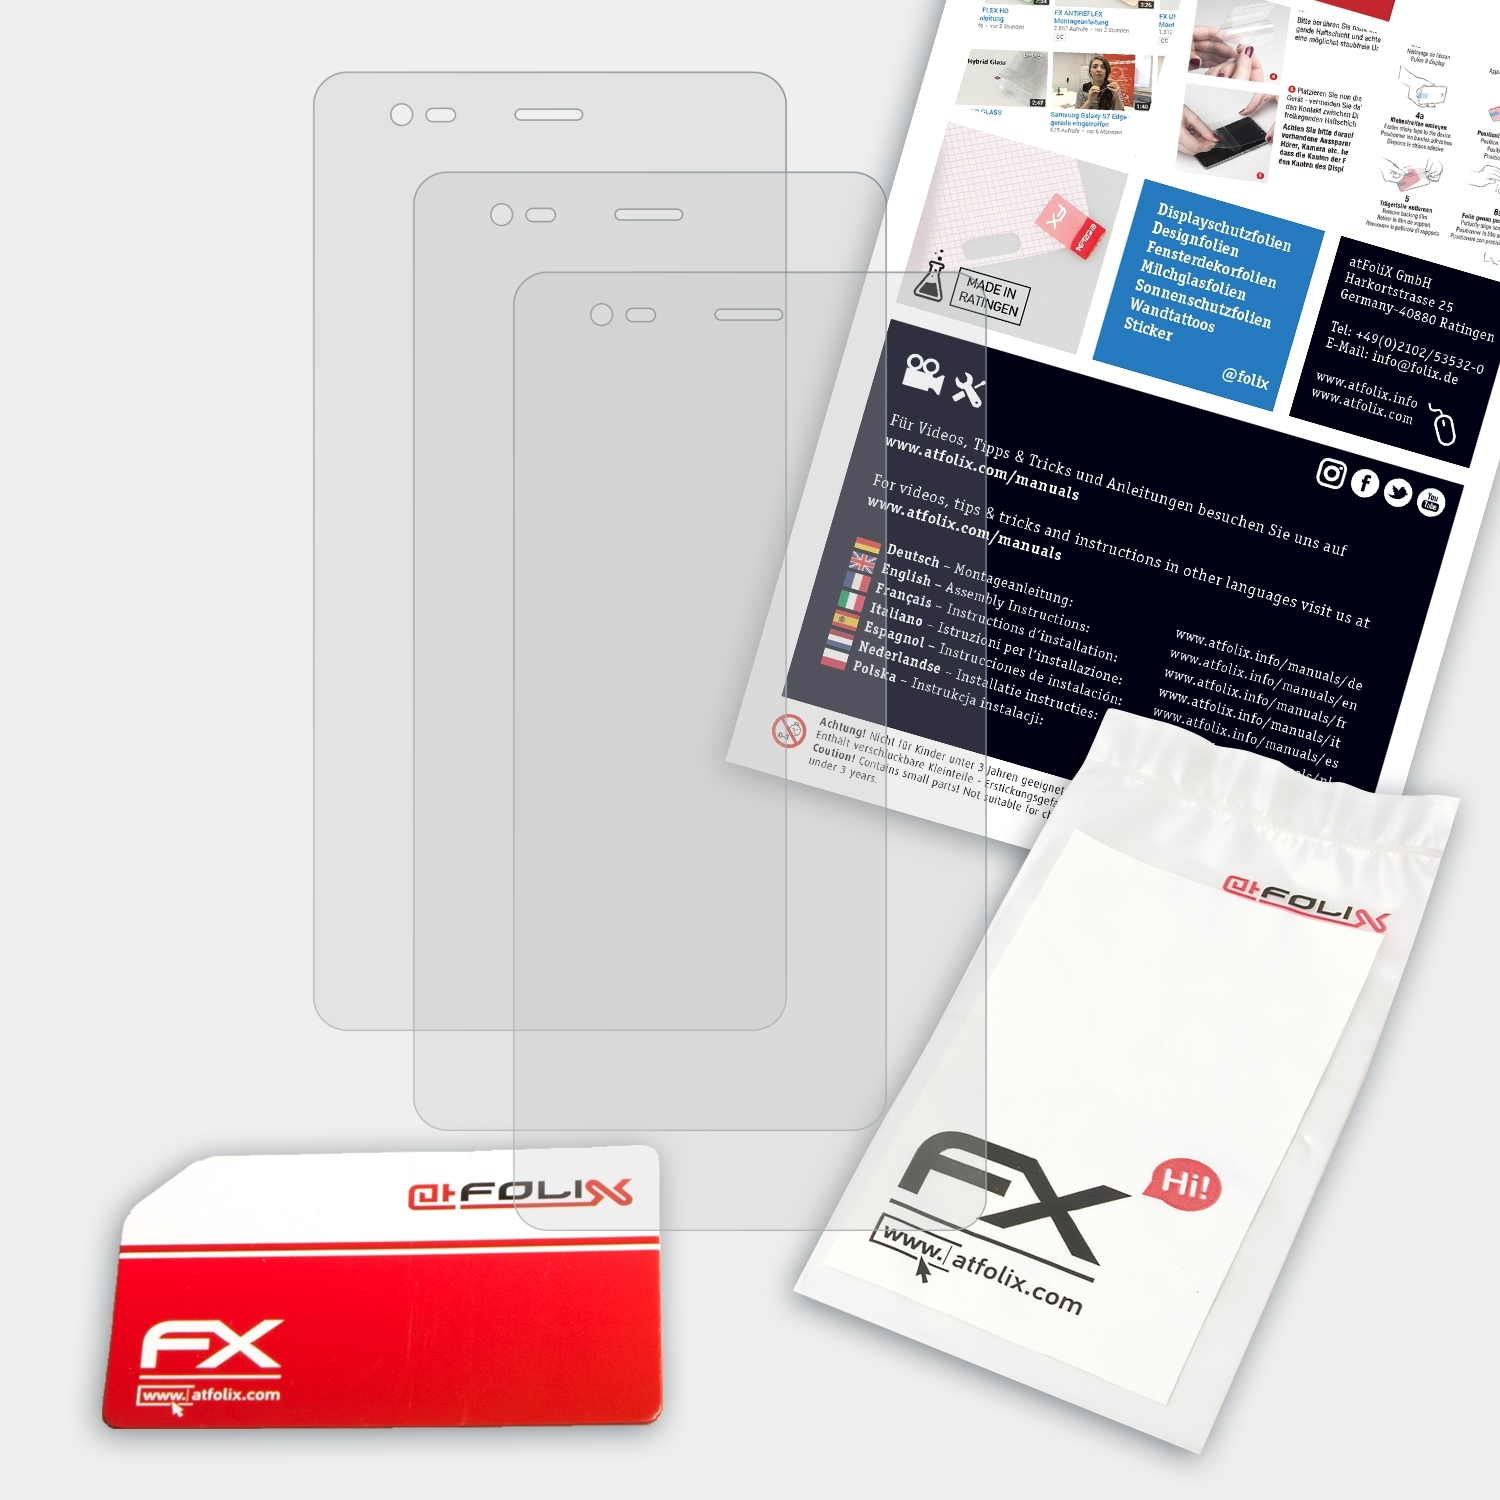 ATFOLIX 3x FX-Antireflex Displayschutz(für S550) Energizer Energy